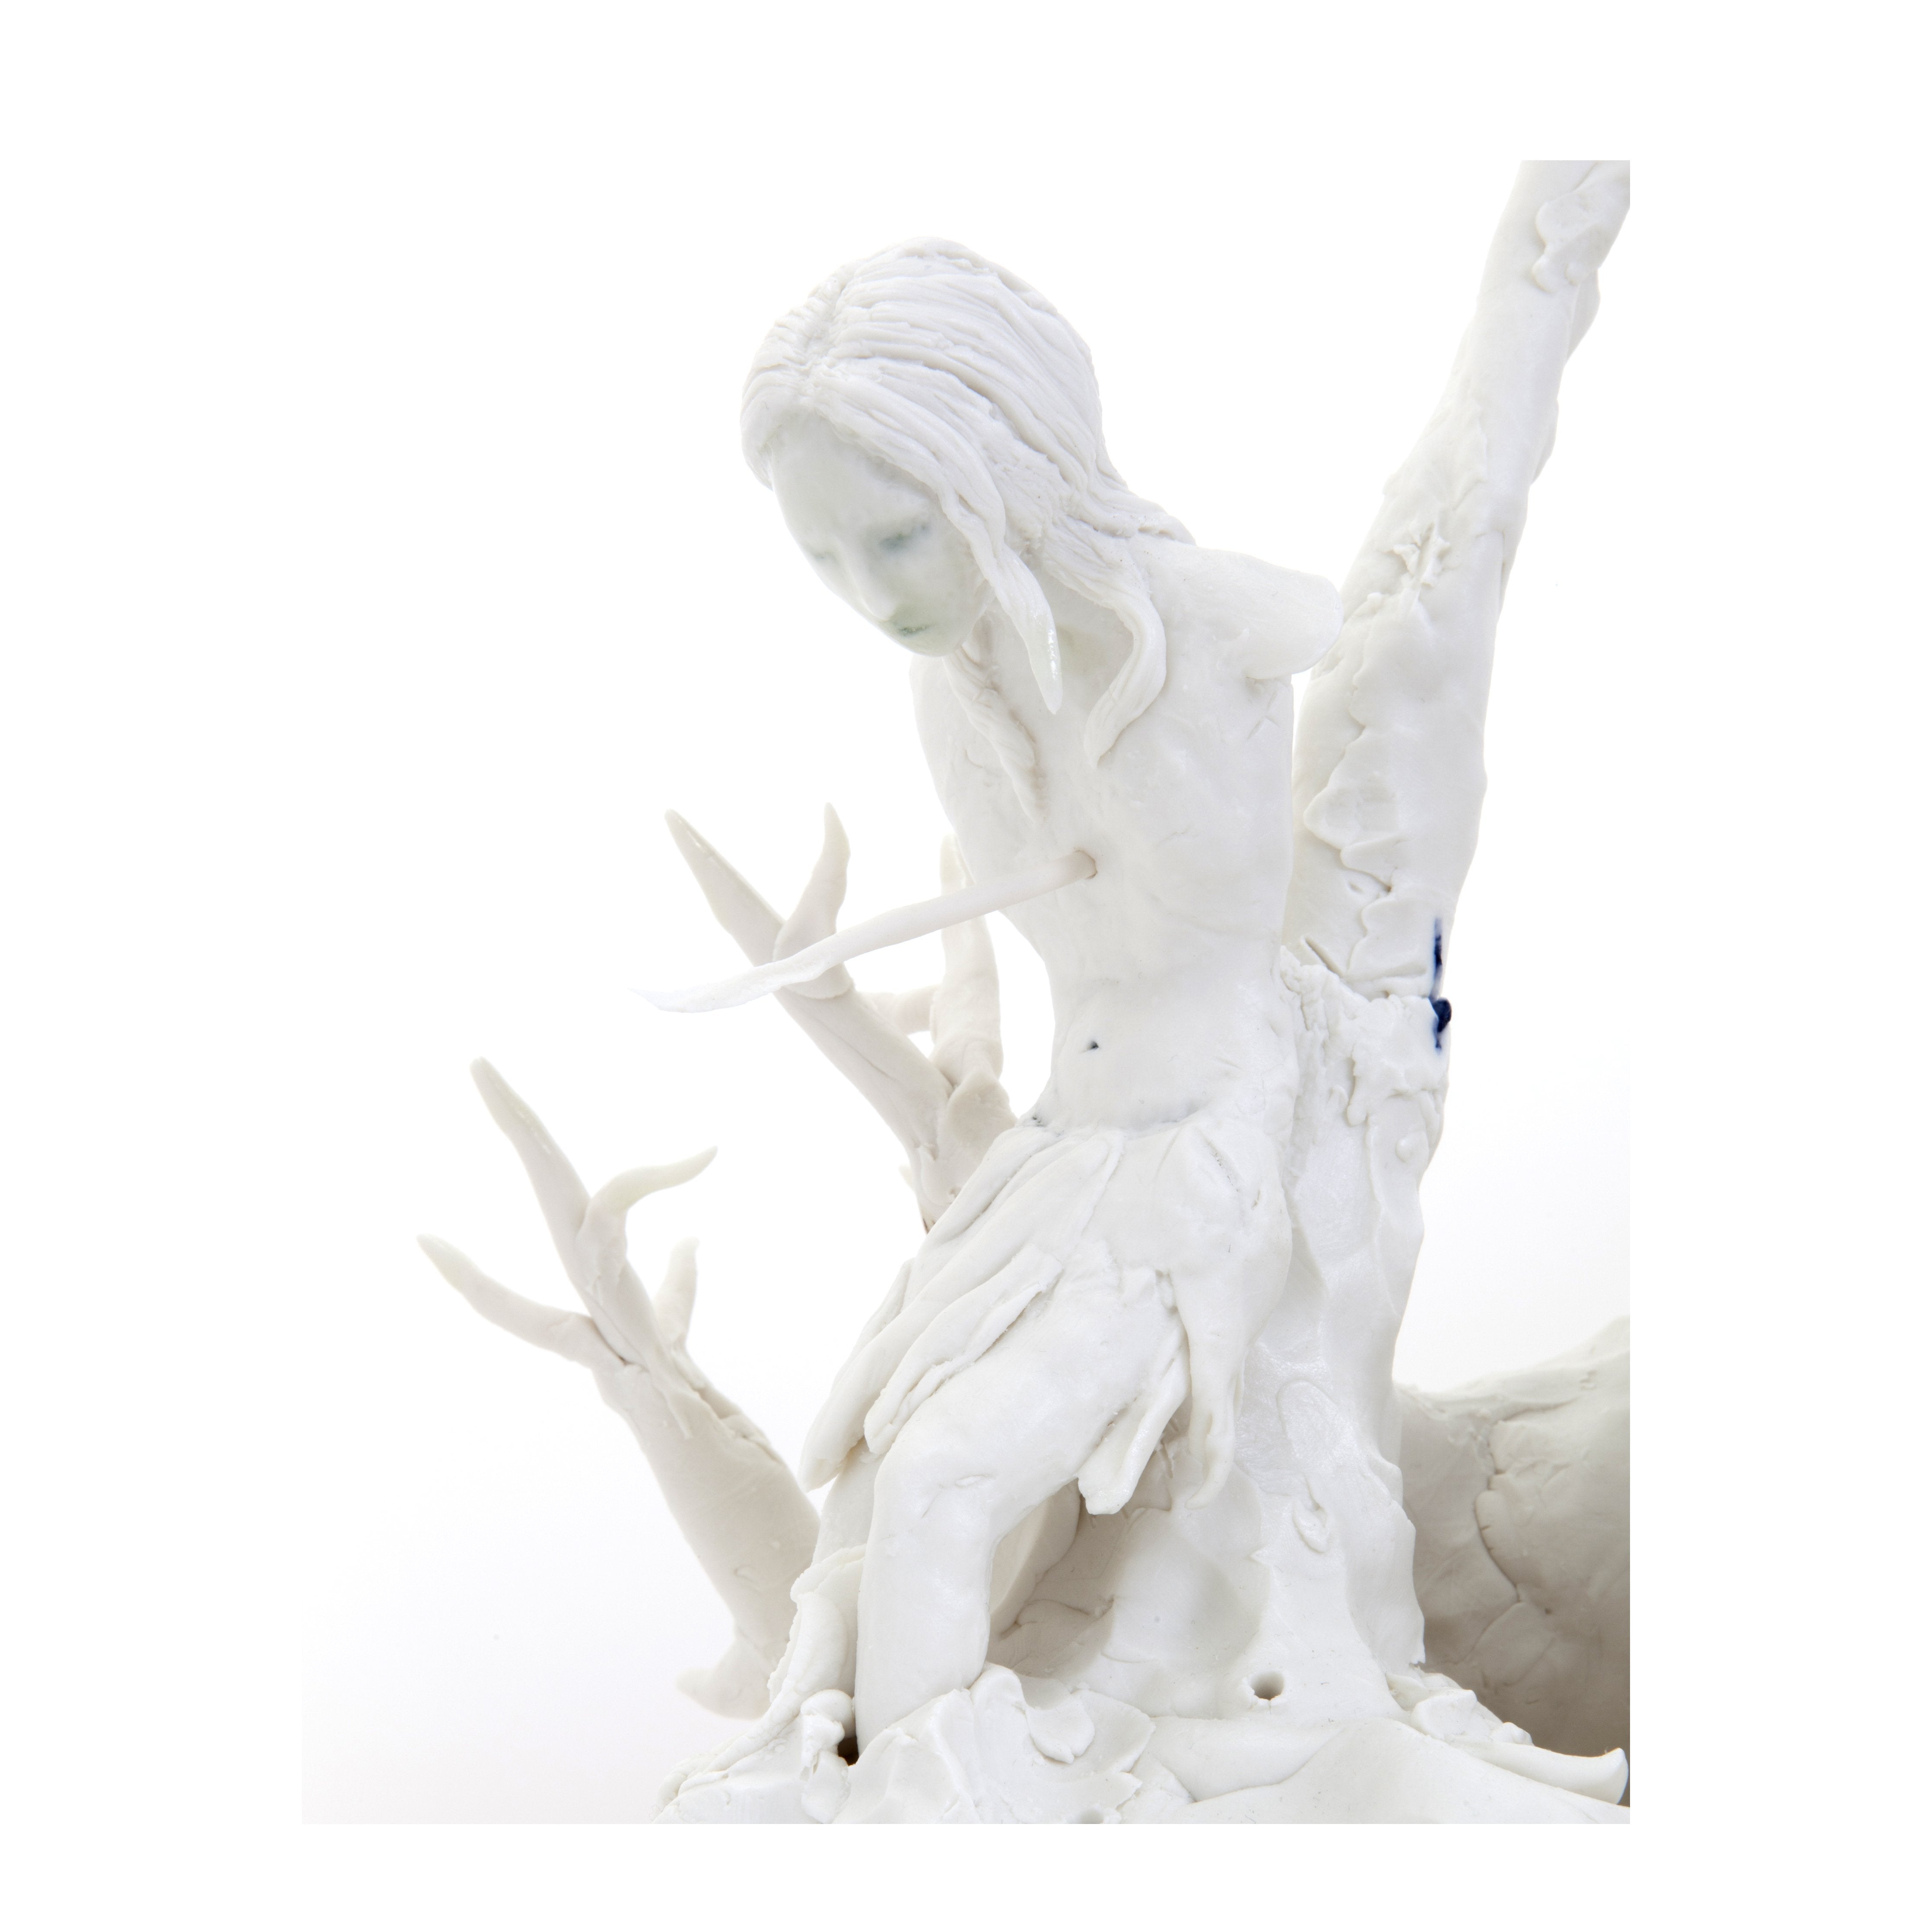 Claire Curneen,Baroque and Berserk, Porcelain sculpture - ONEROOM